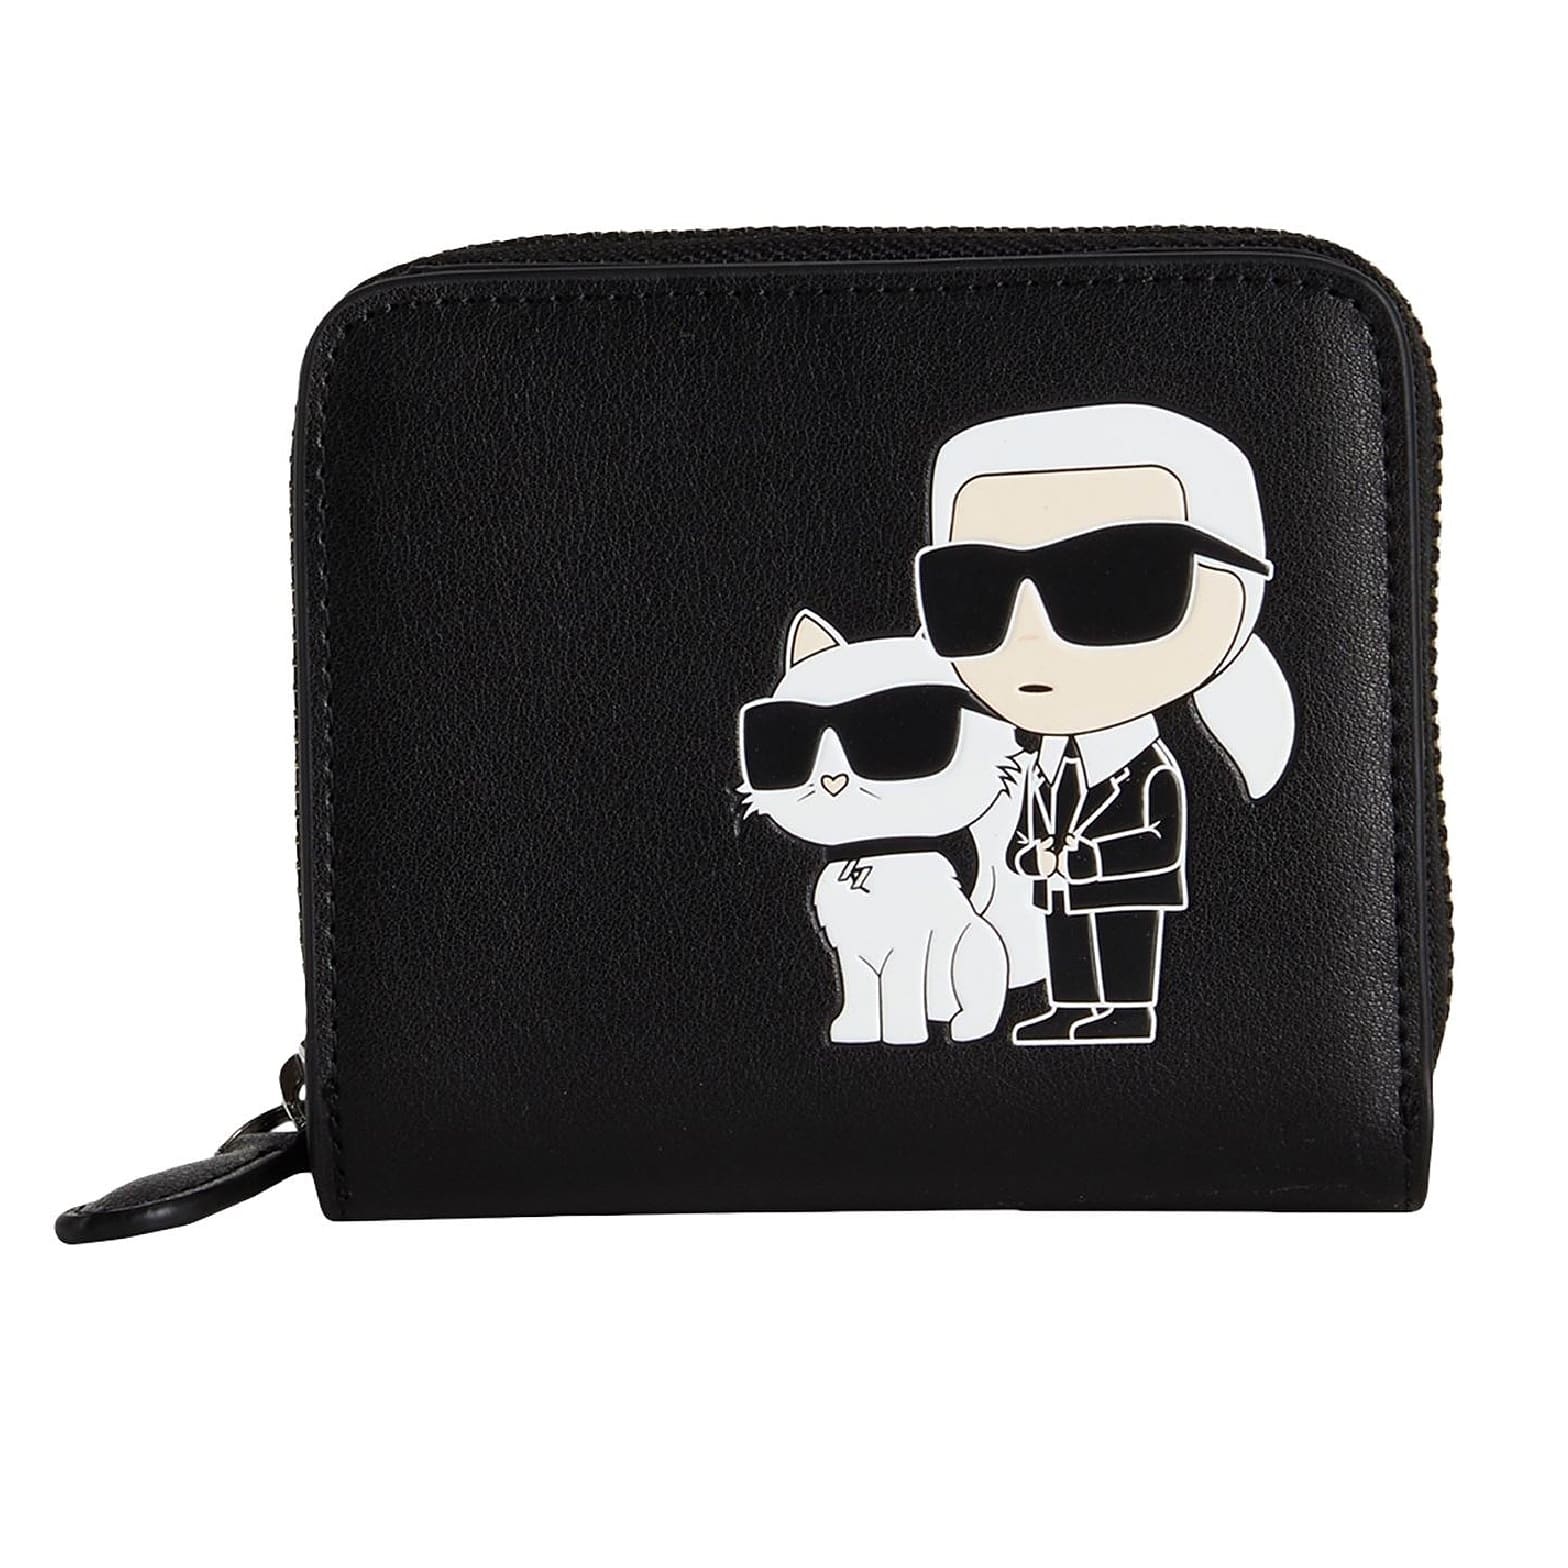 Кошелек Karl Lagerfeld K/ikonik 2.0 Leather Sm Zipwlt, черный мужской клатч из натуральной кожи длинный кошелек на двойной молнии для монет для телефона чехол держатель для карт